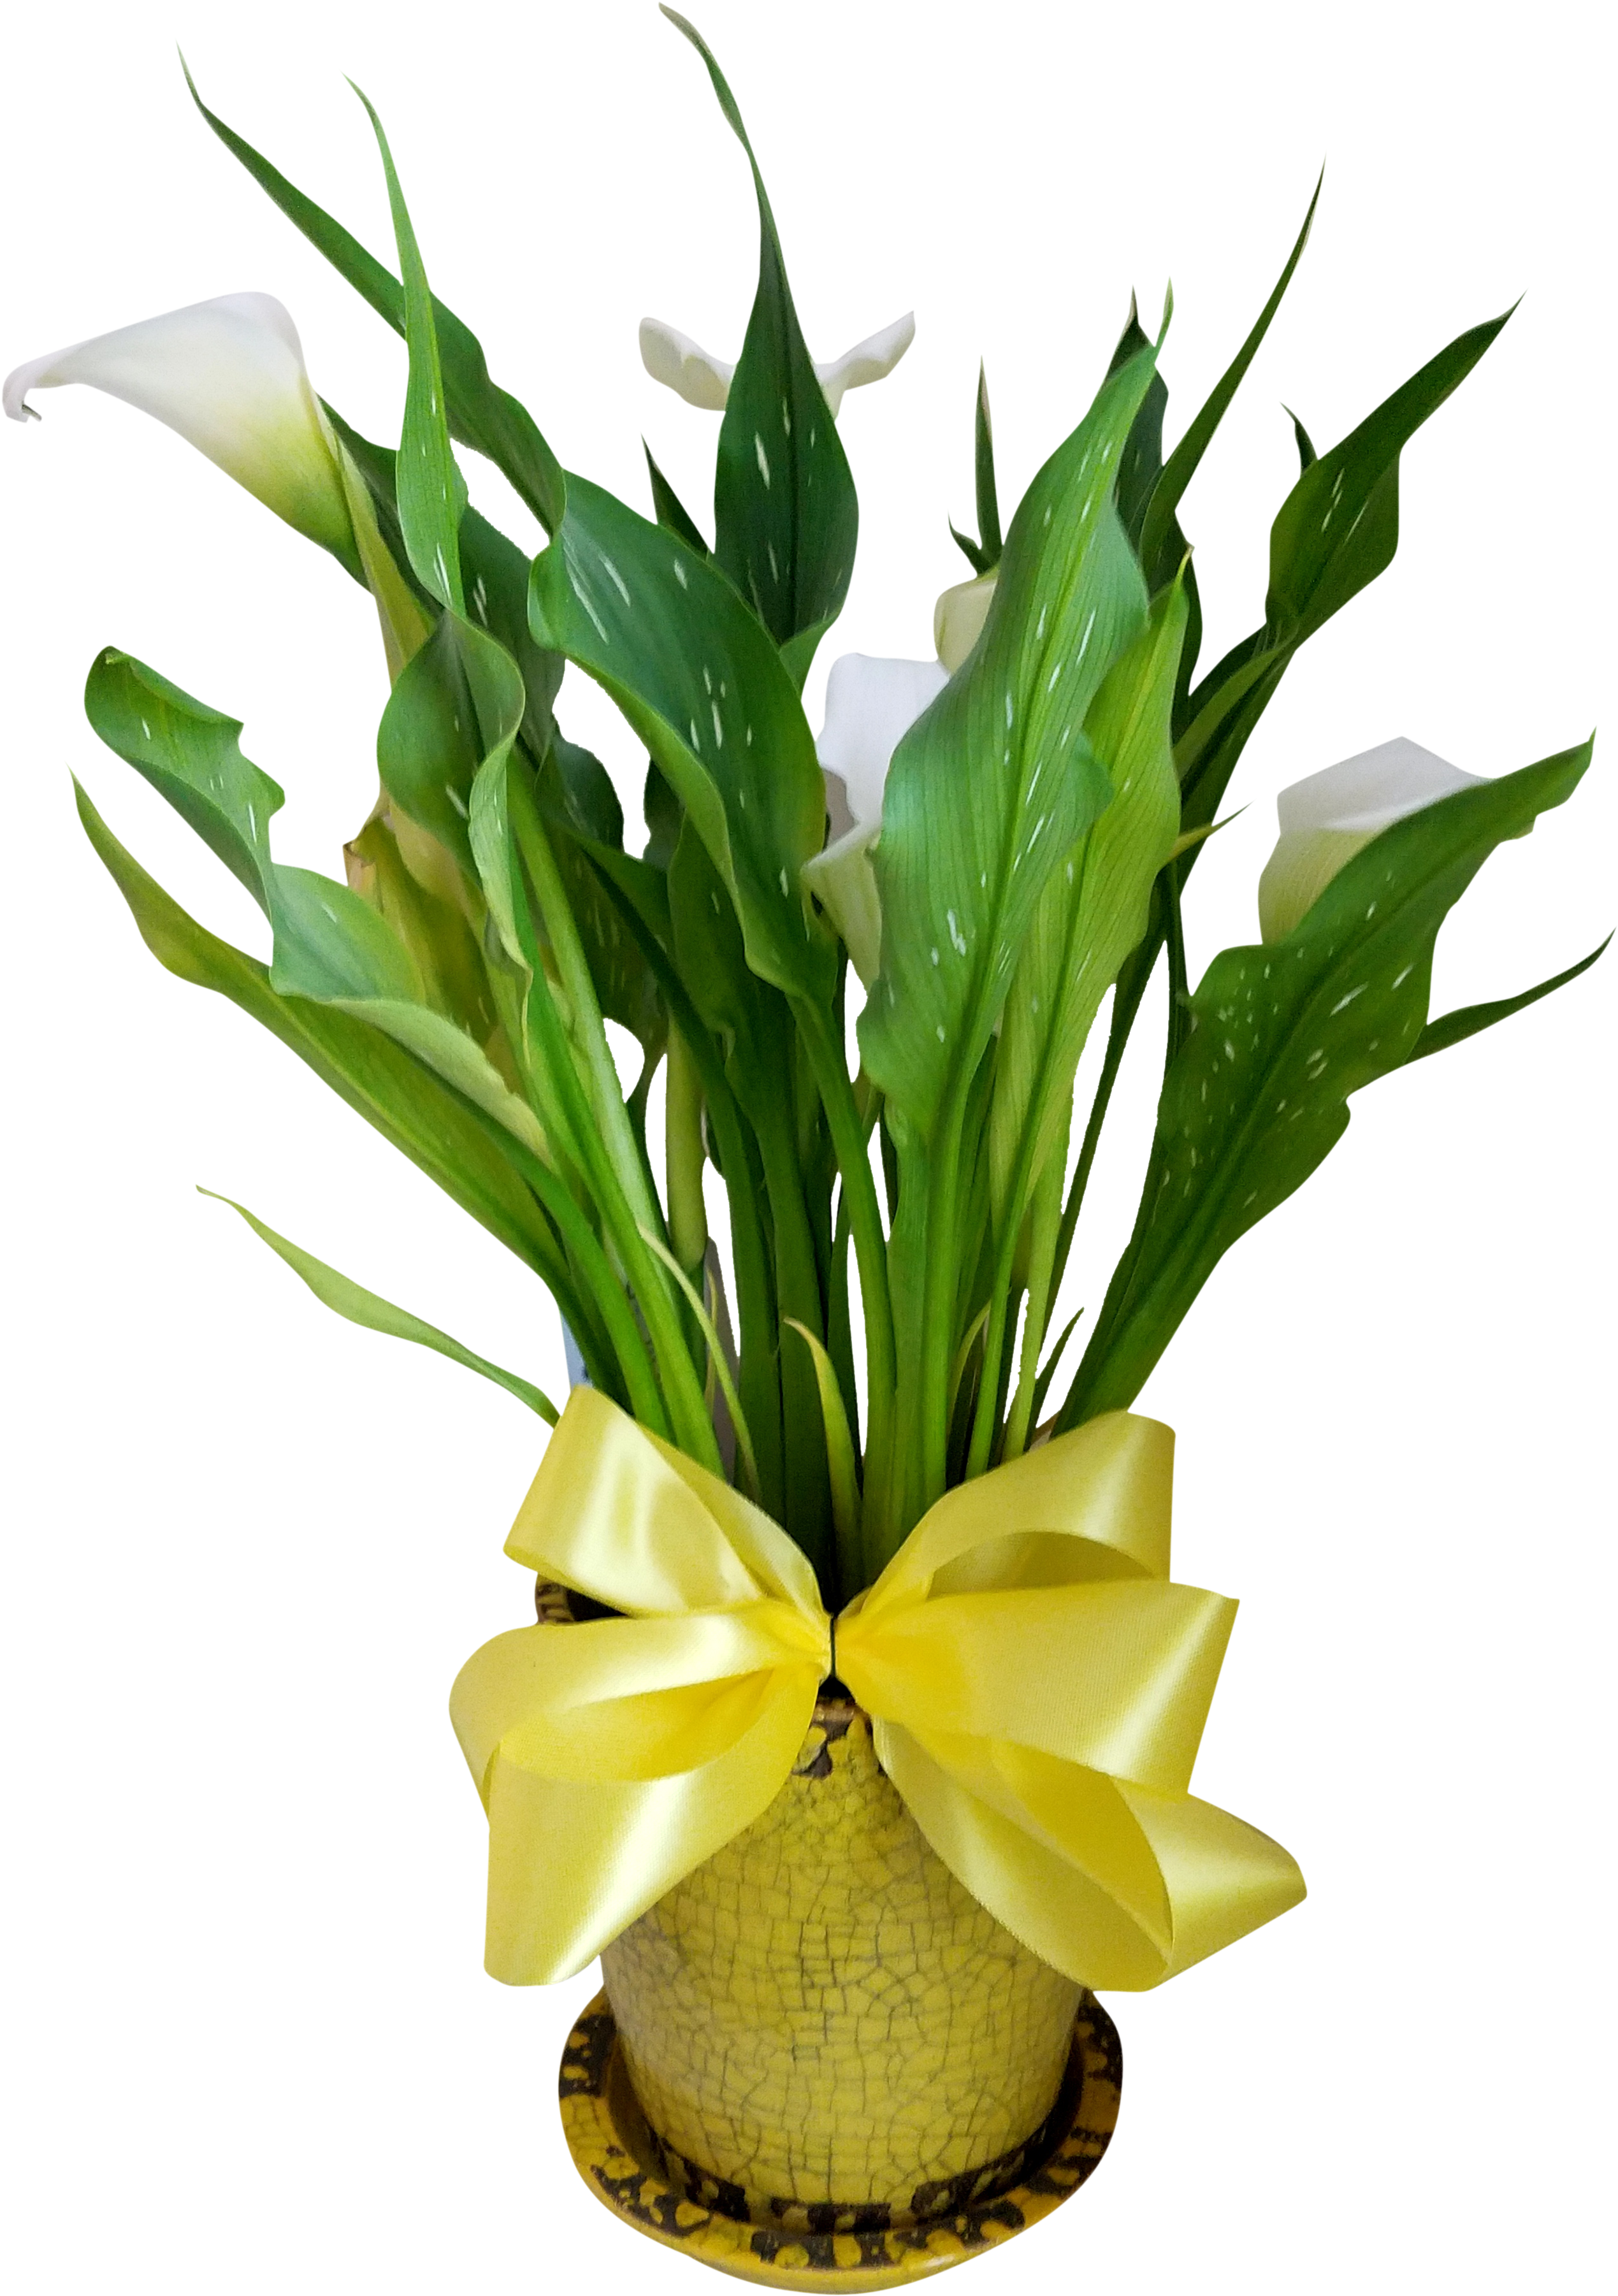 Calla Lily Plant - Calla Lily (3024x4032)